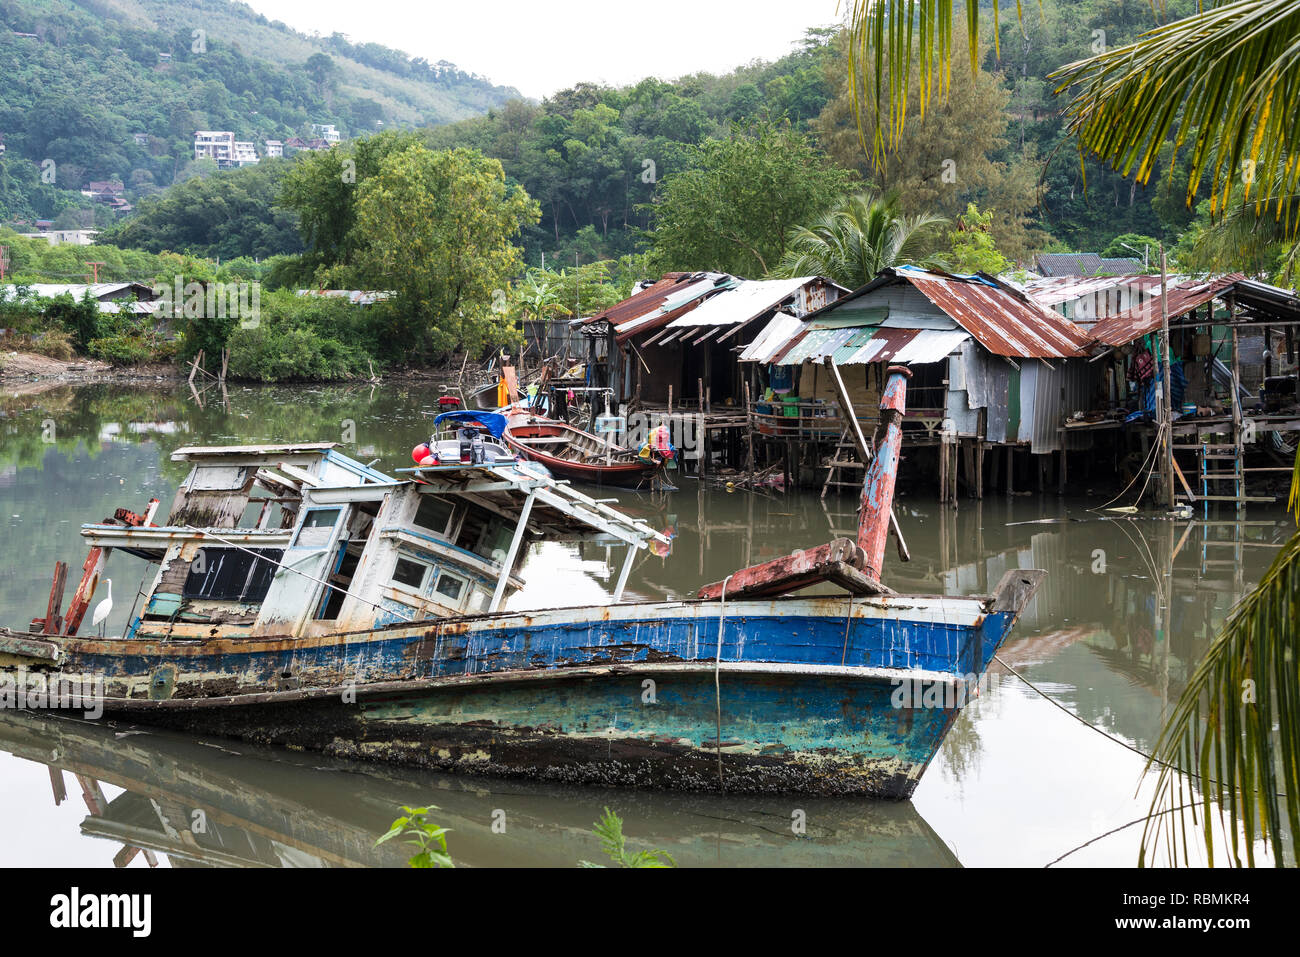 Broken navire coulé sur la rivière de l'île de Phuket en Thaïlande. Jour 15 Décembre 2018 Banque D'Images